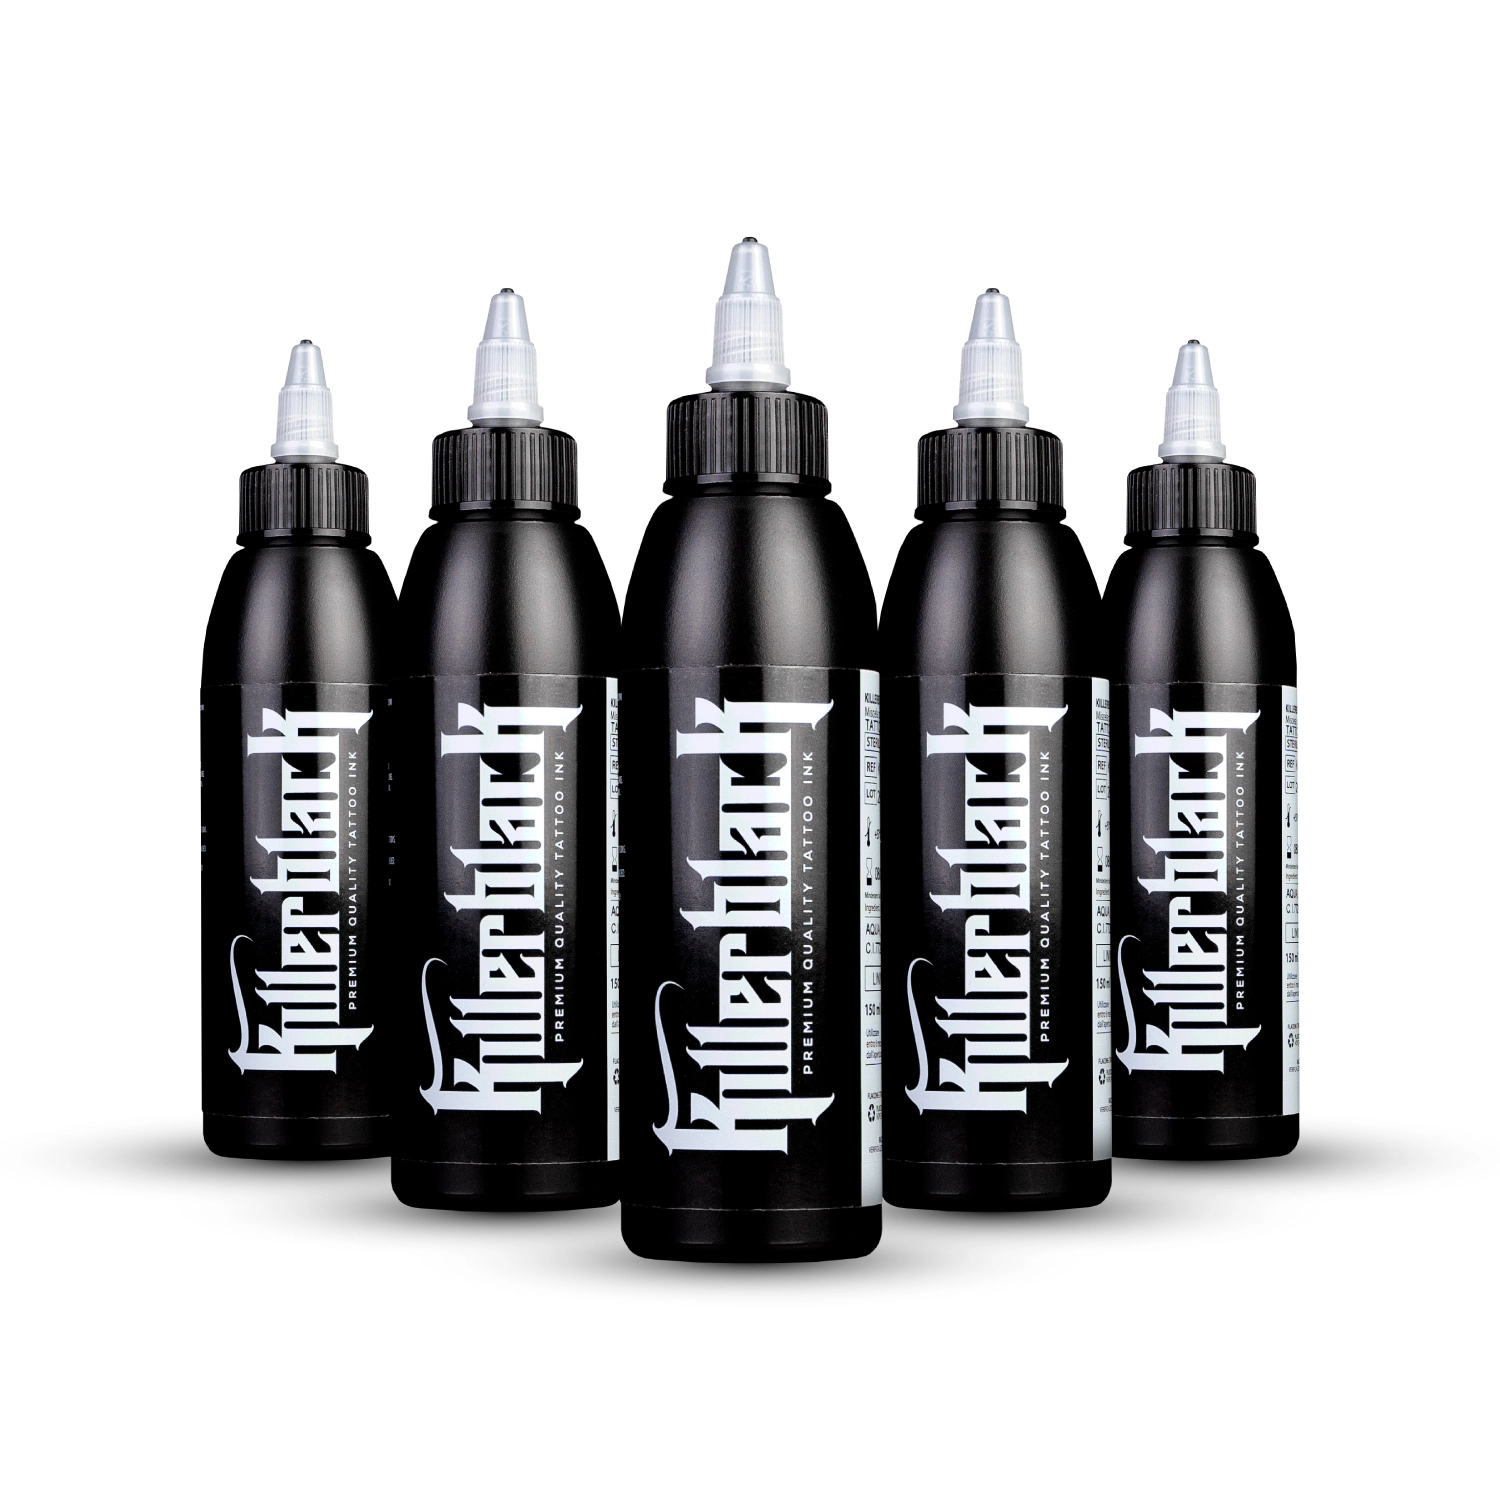 KillerBlack Tattoofarbe - Full Kit (5 x 150ml)